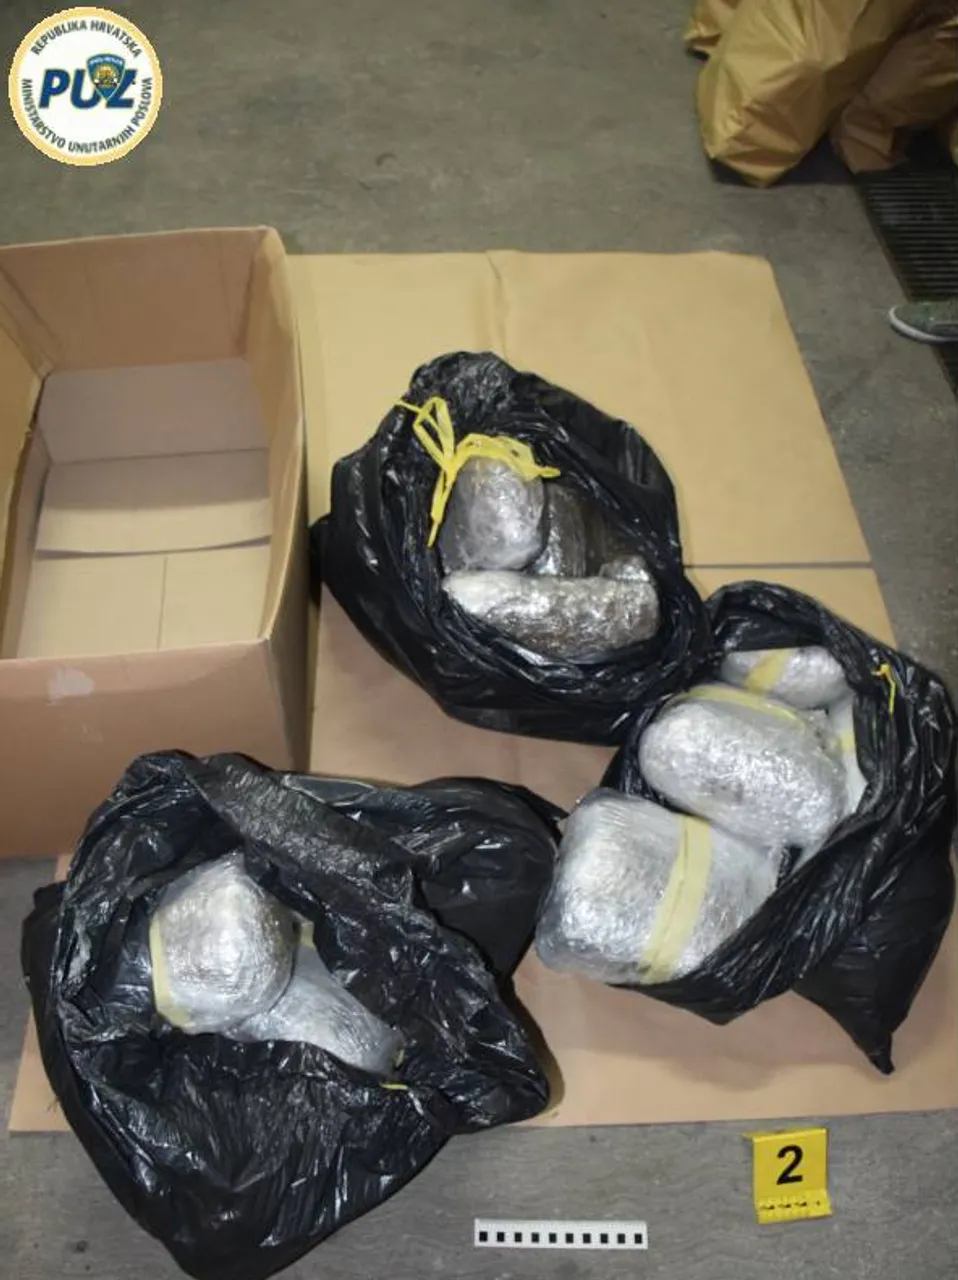 Kod dilera iz Zagreba našli 150 kila droge: Vrijedi oko 3 milijuna kuna